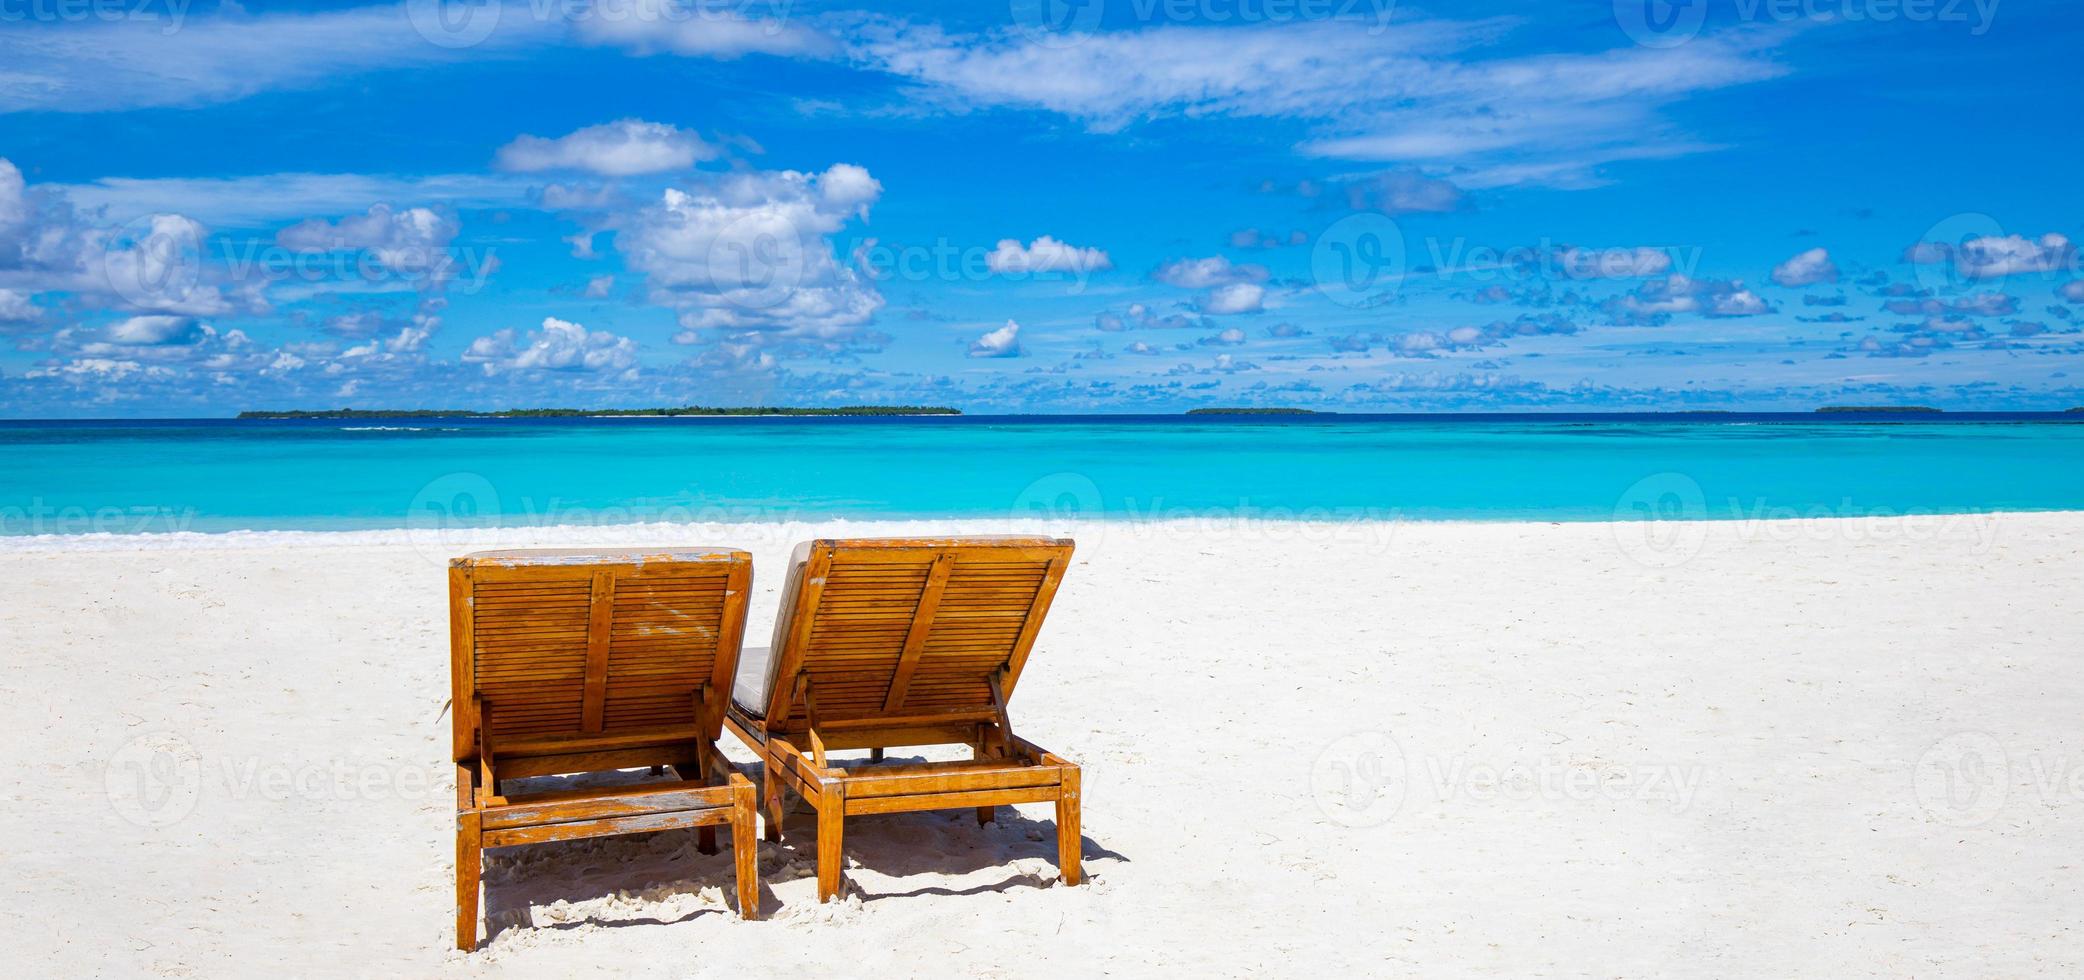 twee strandstoelen op het tropische zandstrand, panorama ideaal voor banners. prachtig strand. stoelen op het zandstrand in de buurt van zee. zomervakantie vakantie concept toerisme. inspirerend tropisch landschap foto